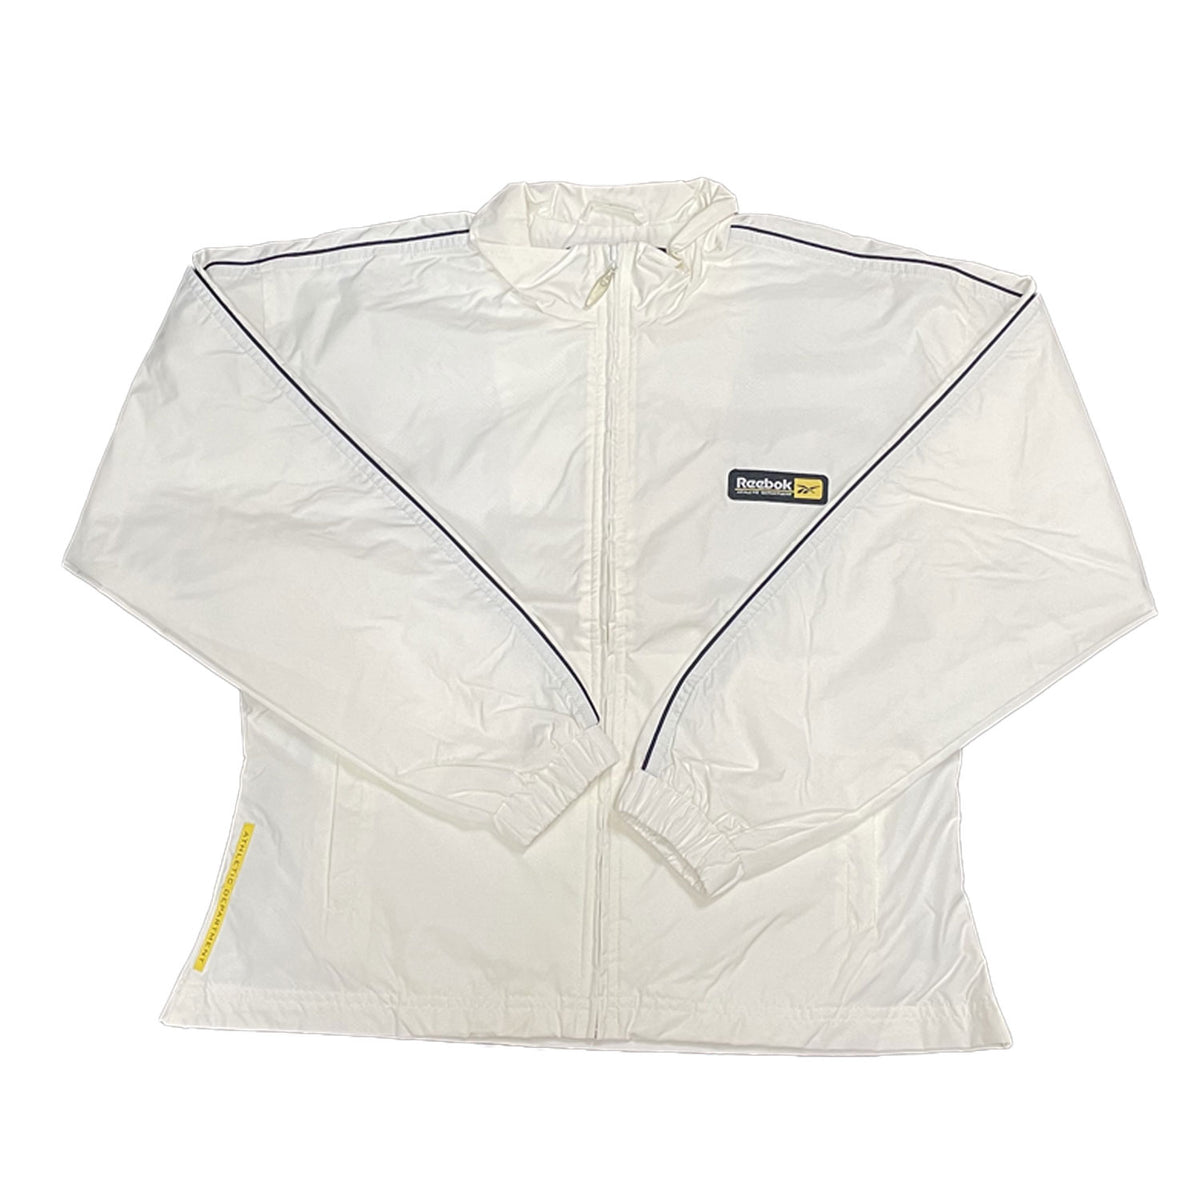 Reebok Womens Athletic Sports Jacket - White - UK Size 12